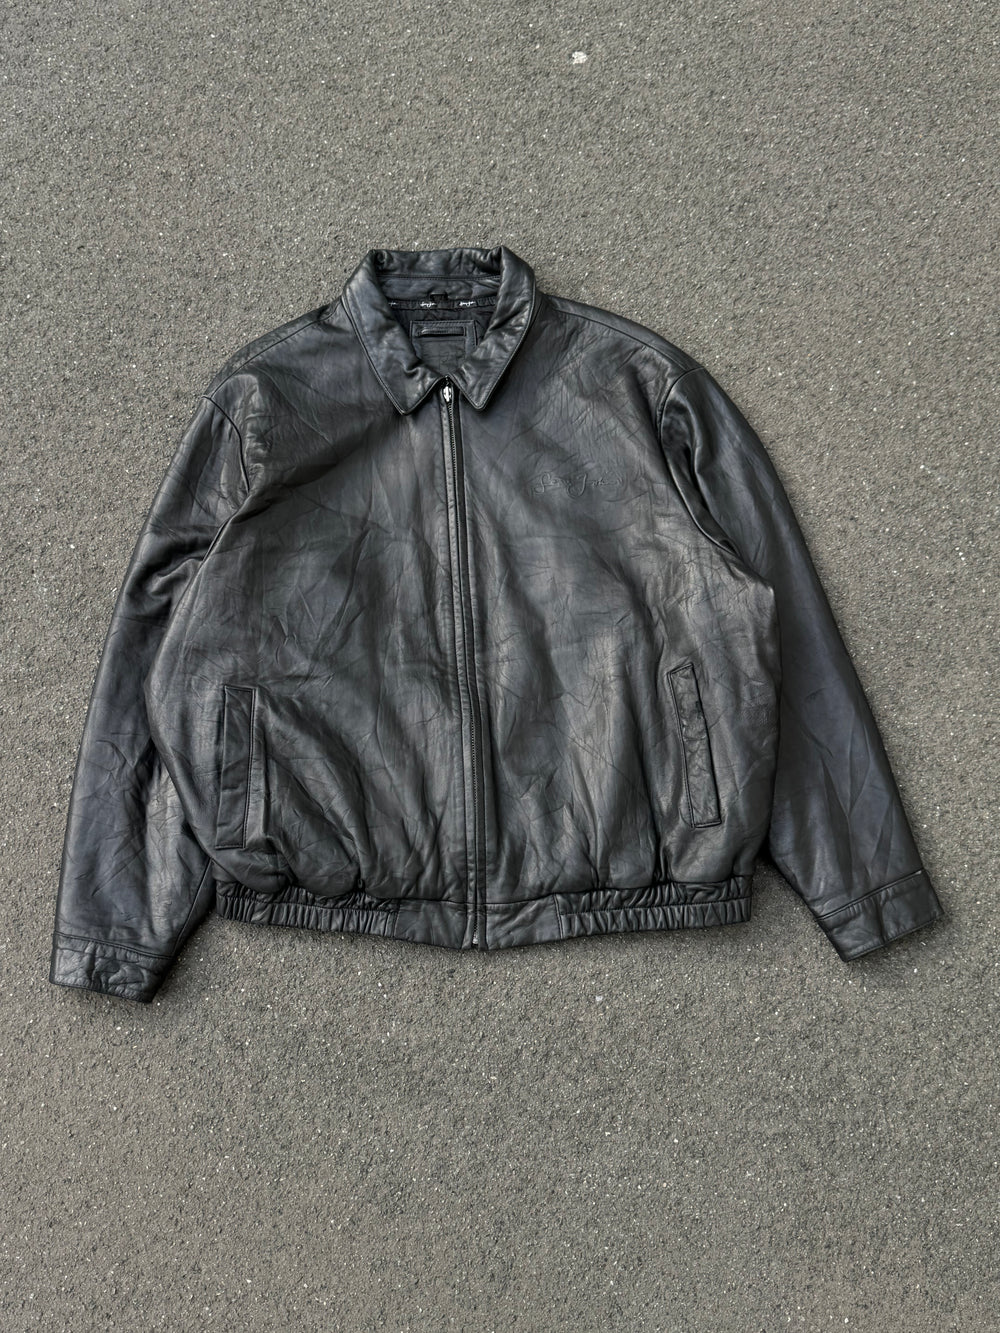 Vintage 90s Sean John Soft Leather Jacket (XXL)